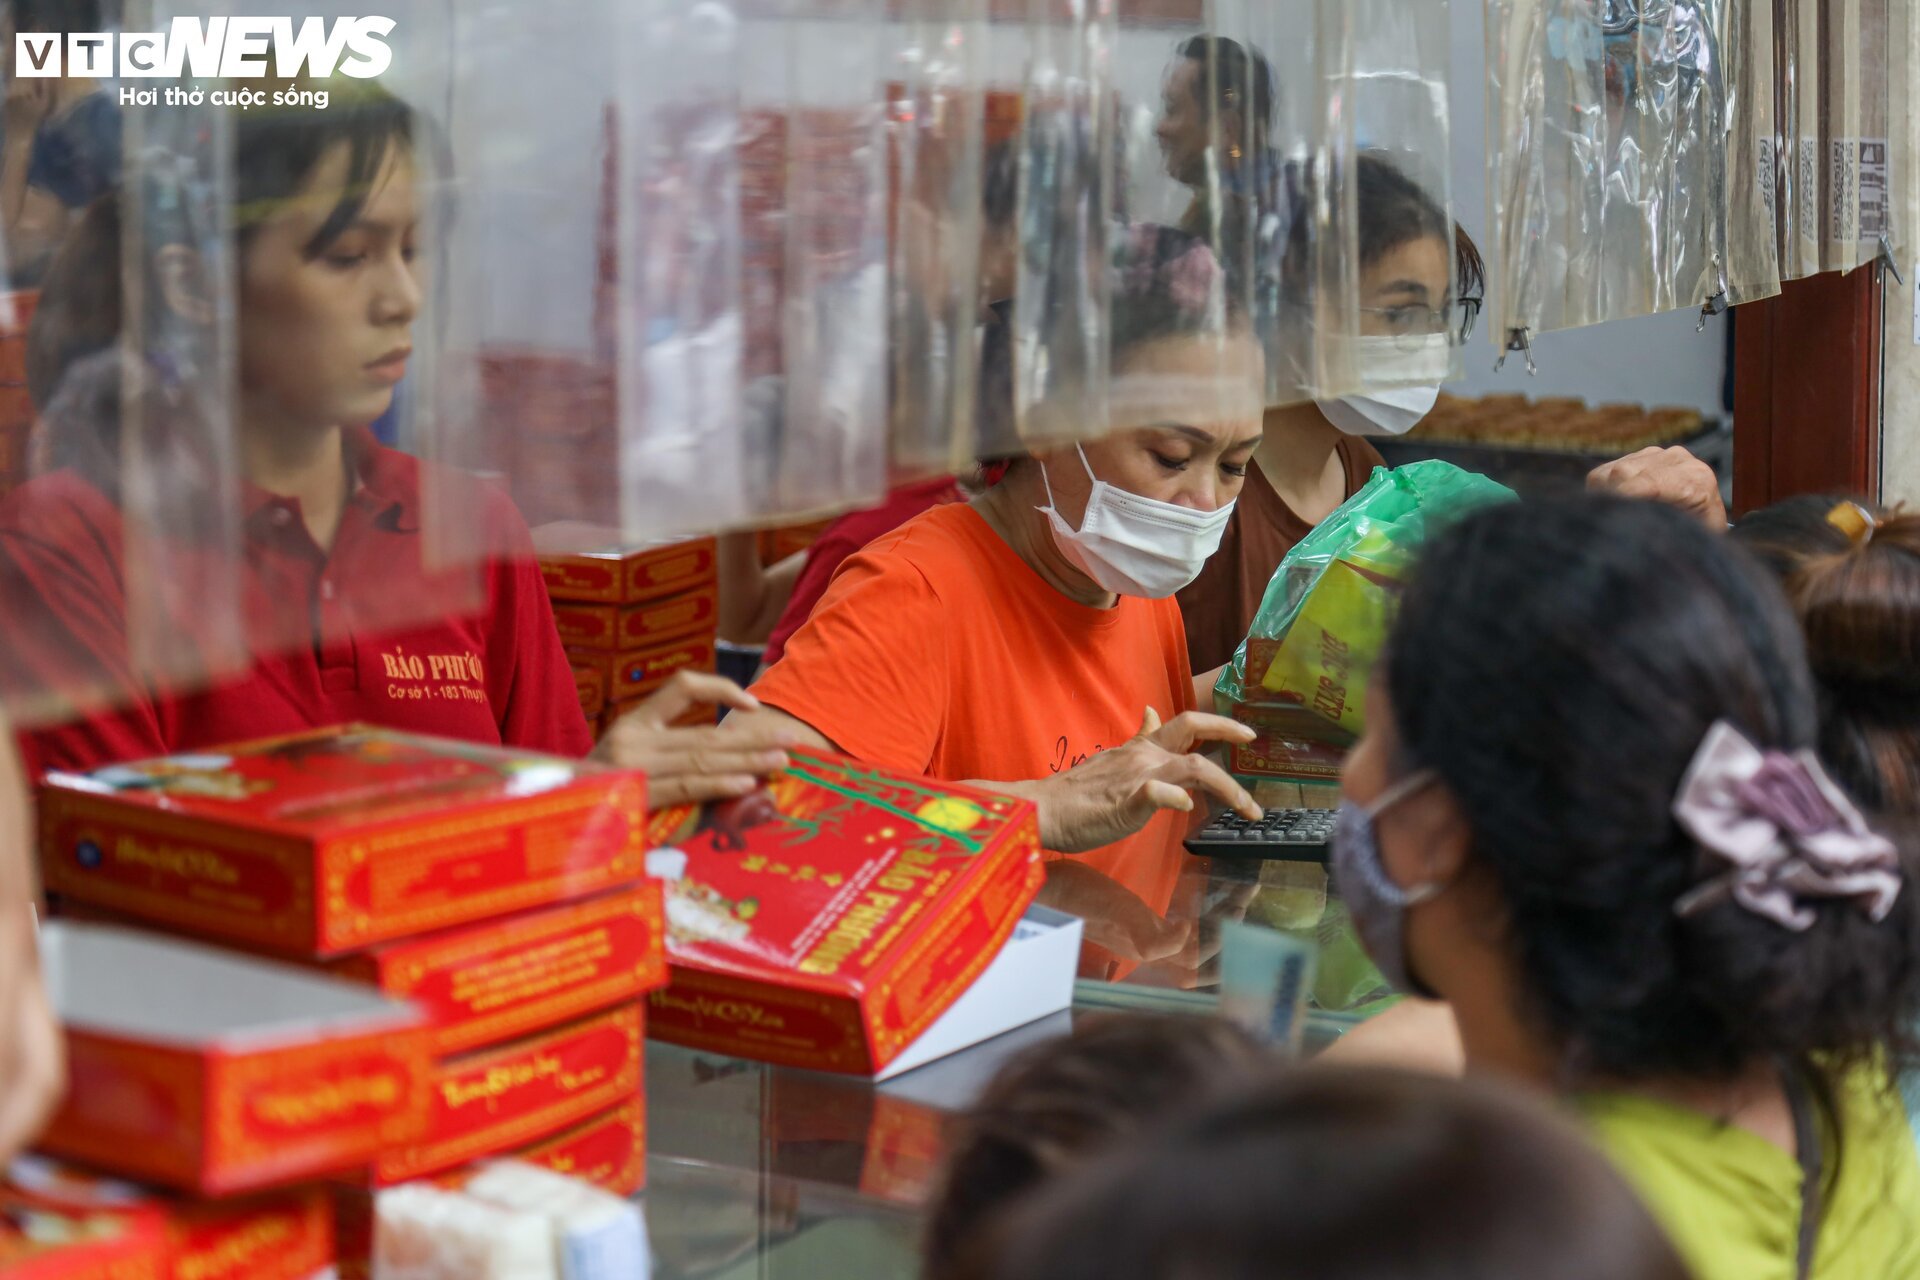 Hàng trăm người xếp hàng chờ mua bánh trung thu ở Hà Nội - Ảnh 5.